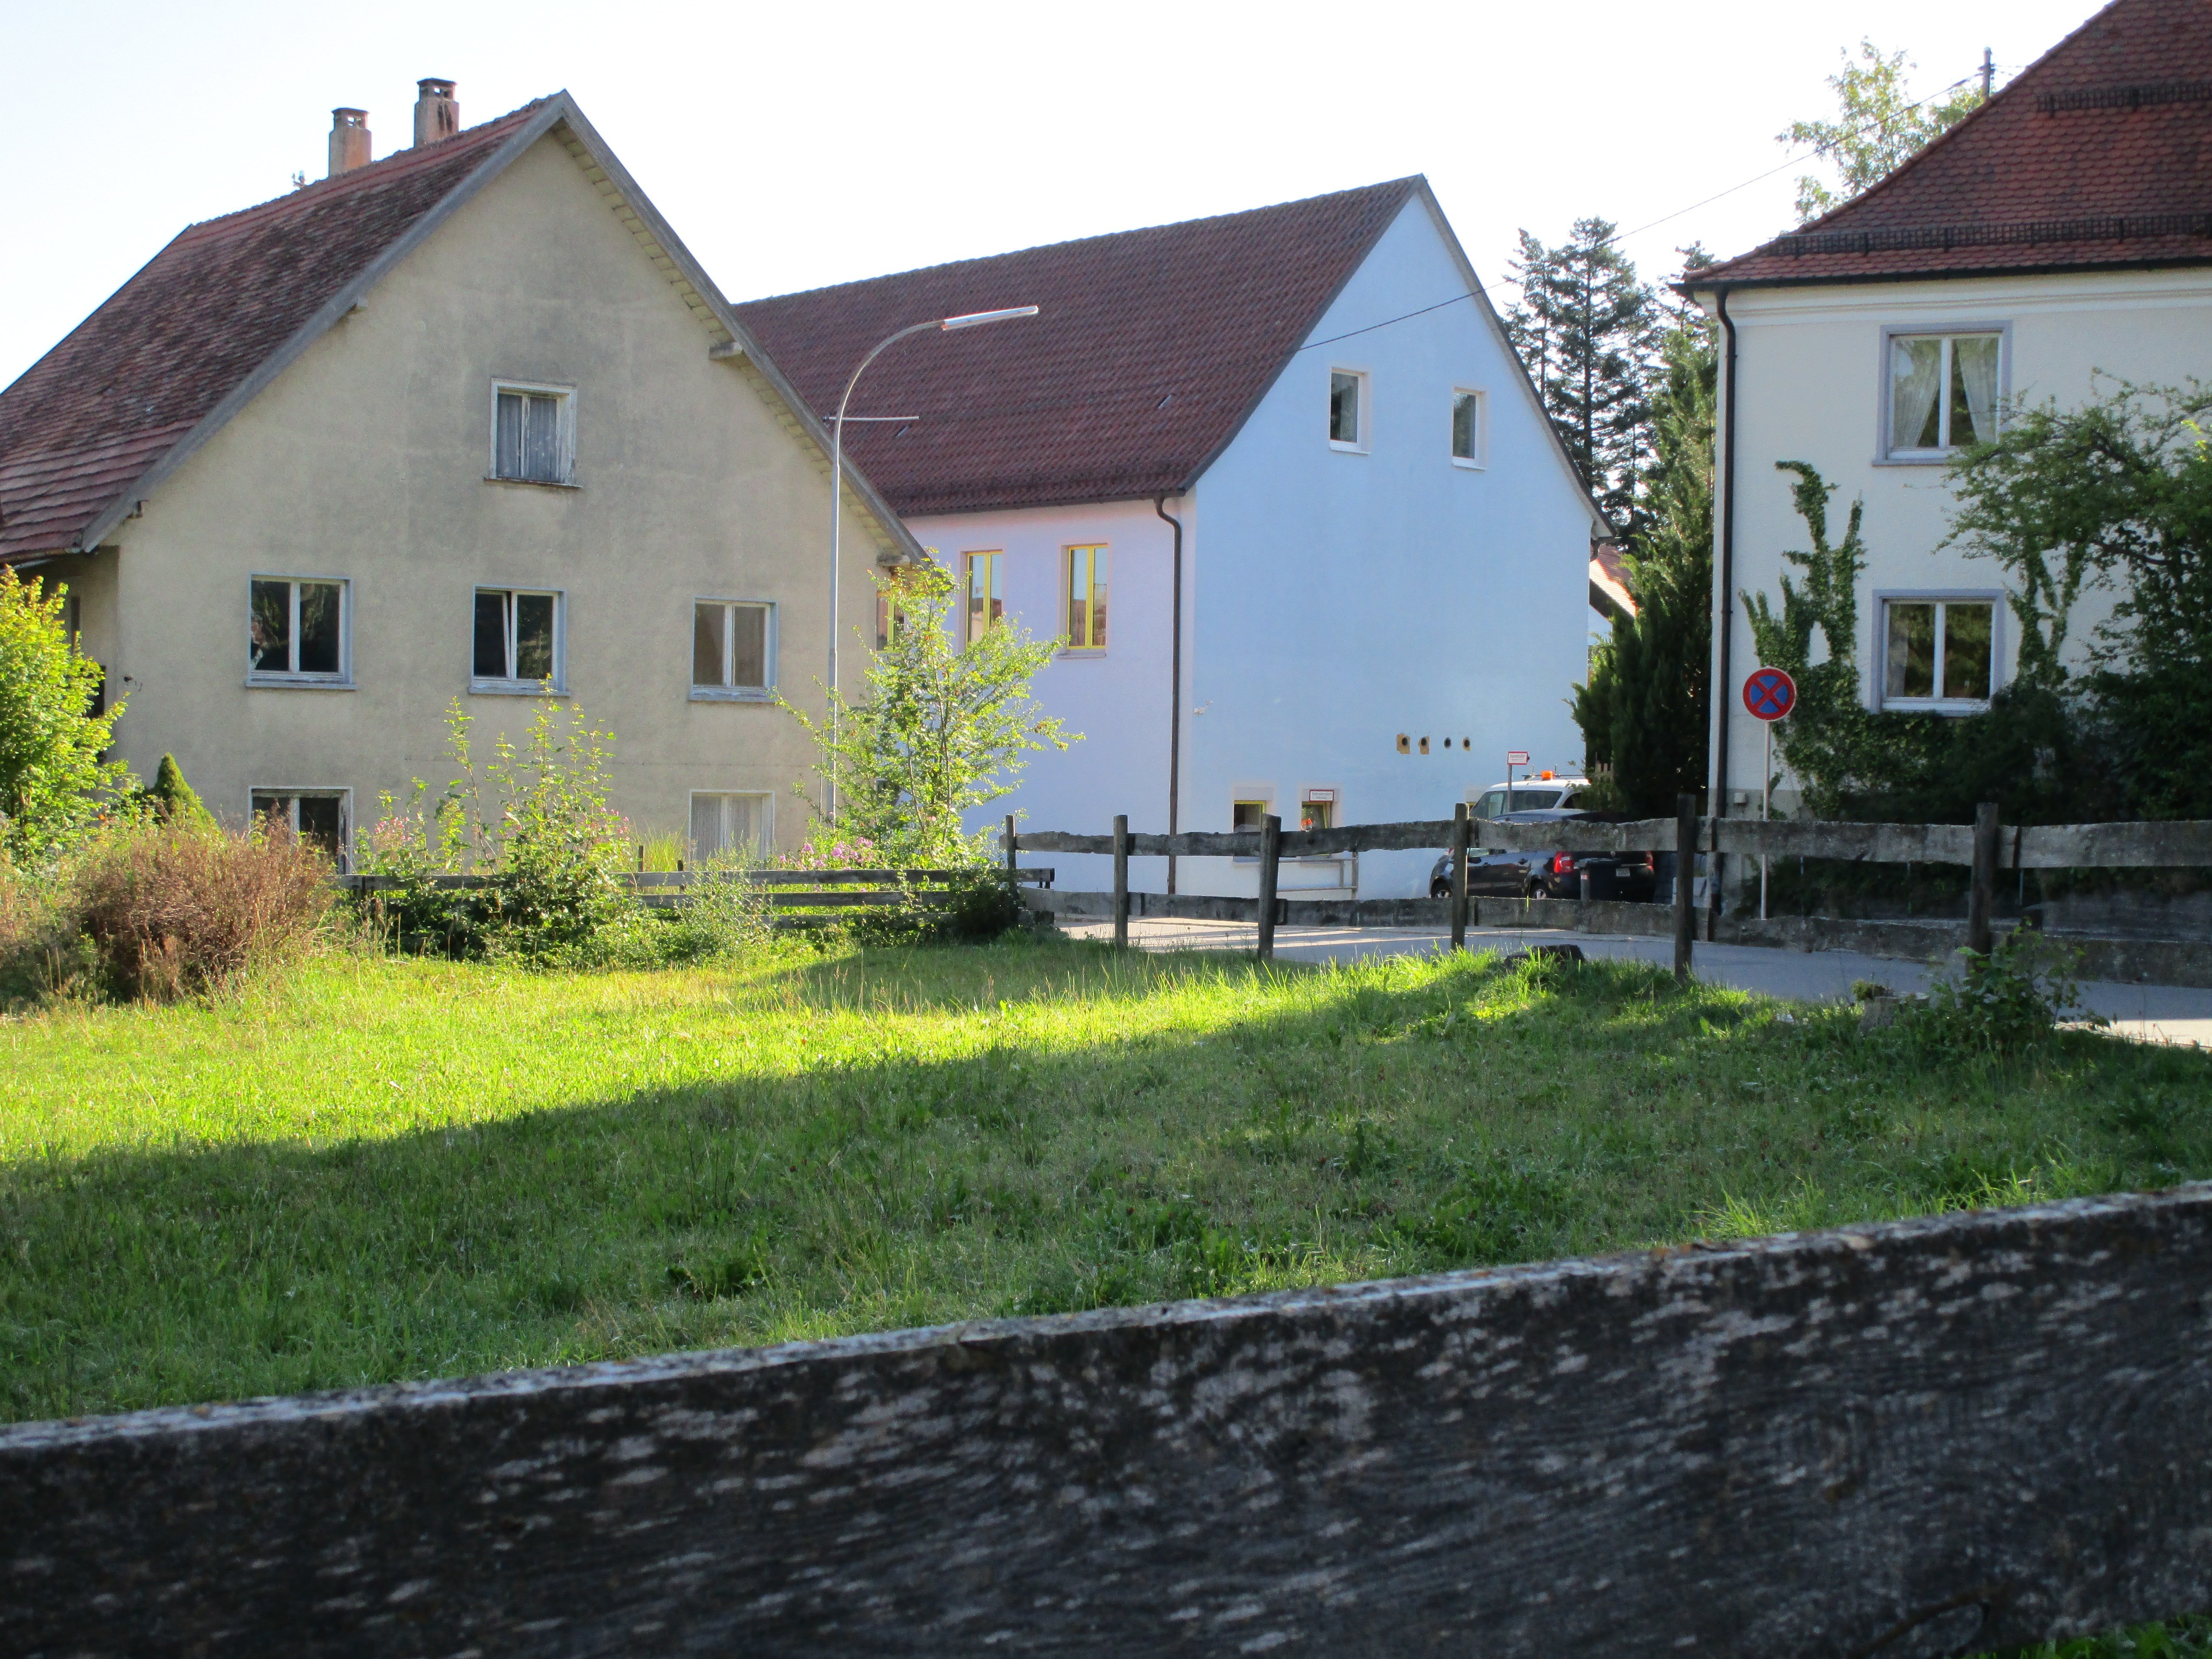  Rößleplatz mit Haus Nr. 3 und blauem Schulgebäude 